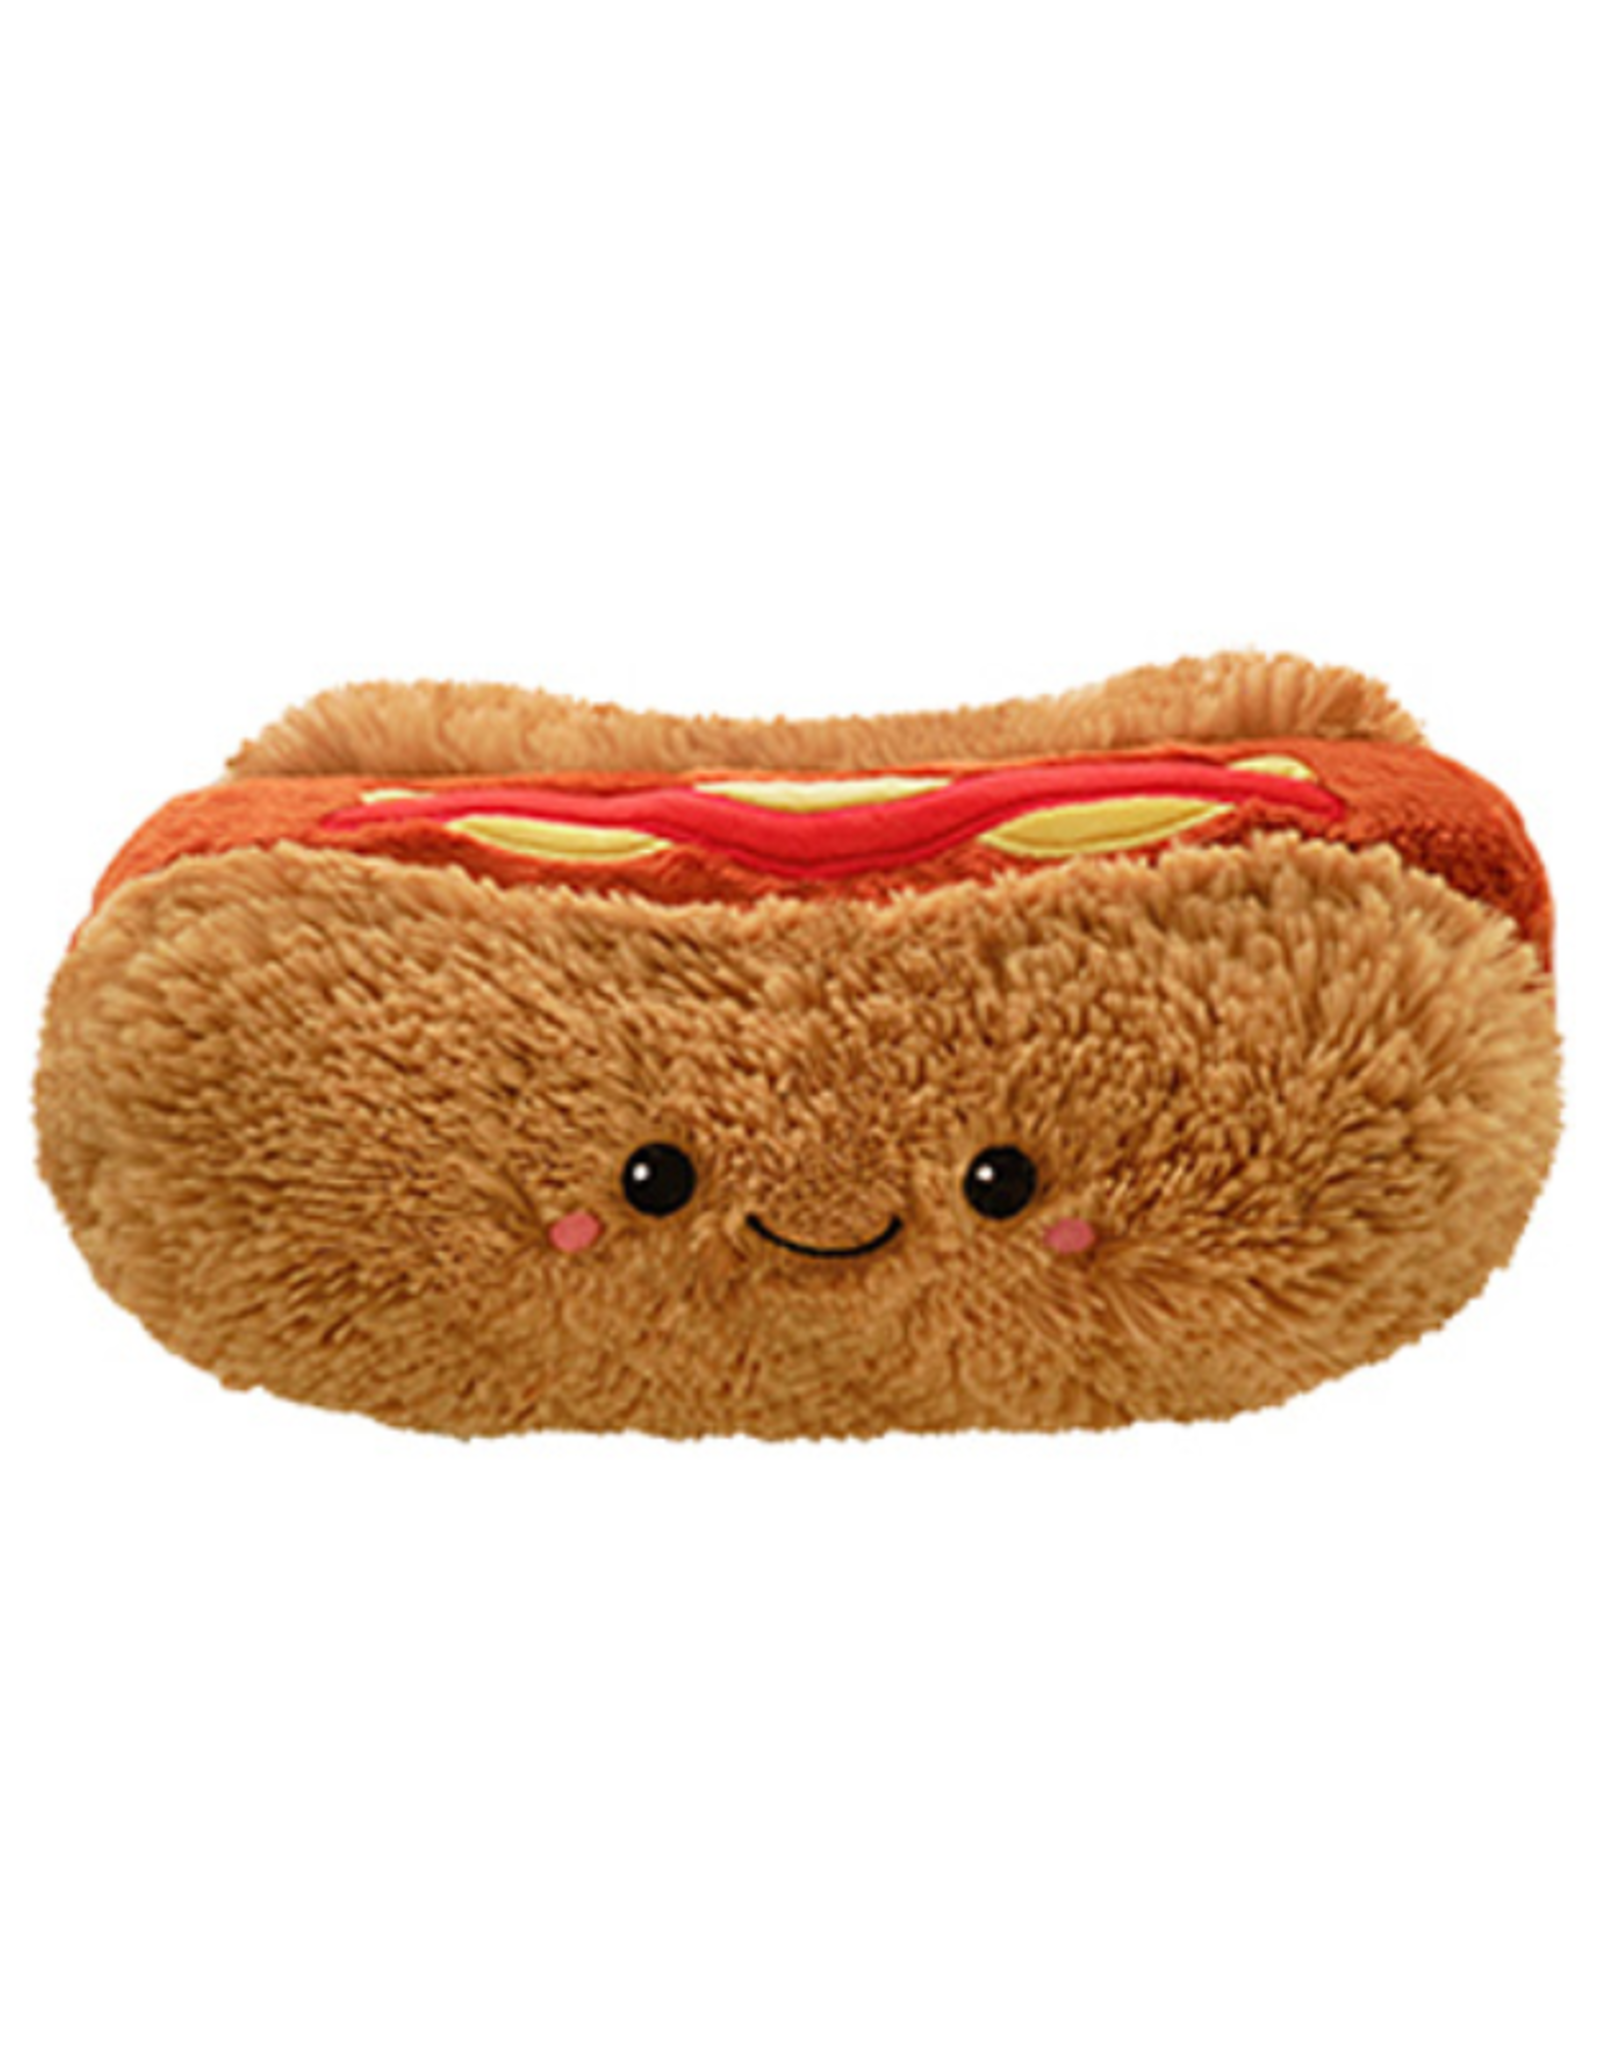 Squishable Mini Squishable: Hot Dog